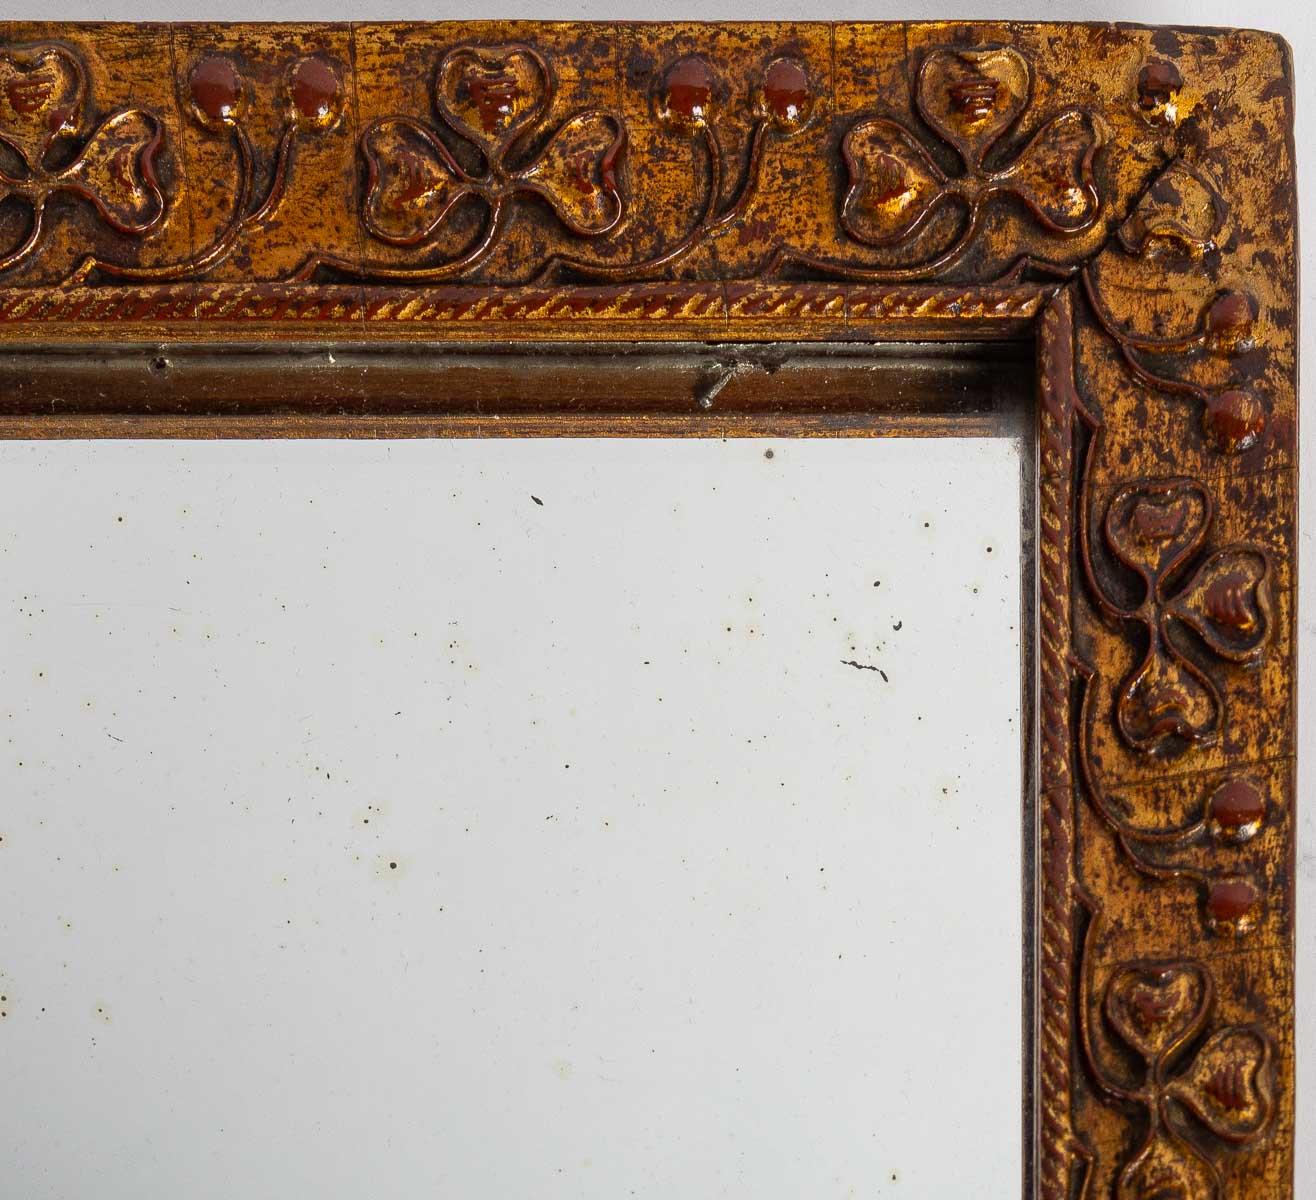 Kleiner Spiegel aus Holz und Stuck mit Kleeblattmotiv.
Maße: H: 29 cm, B: 23 cm, T: 2 cm.